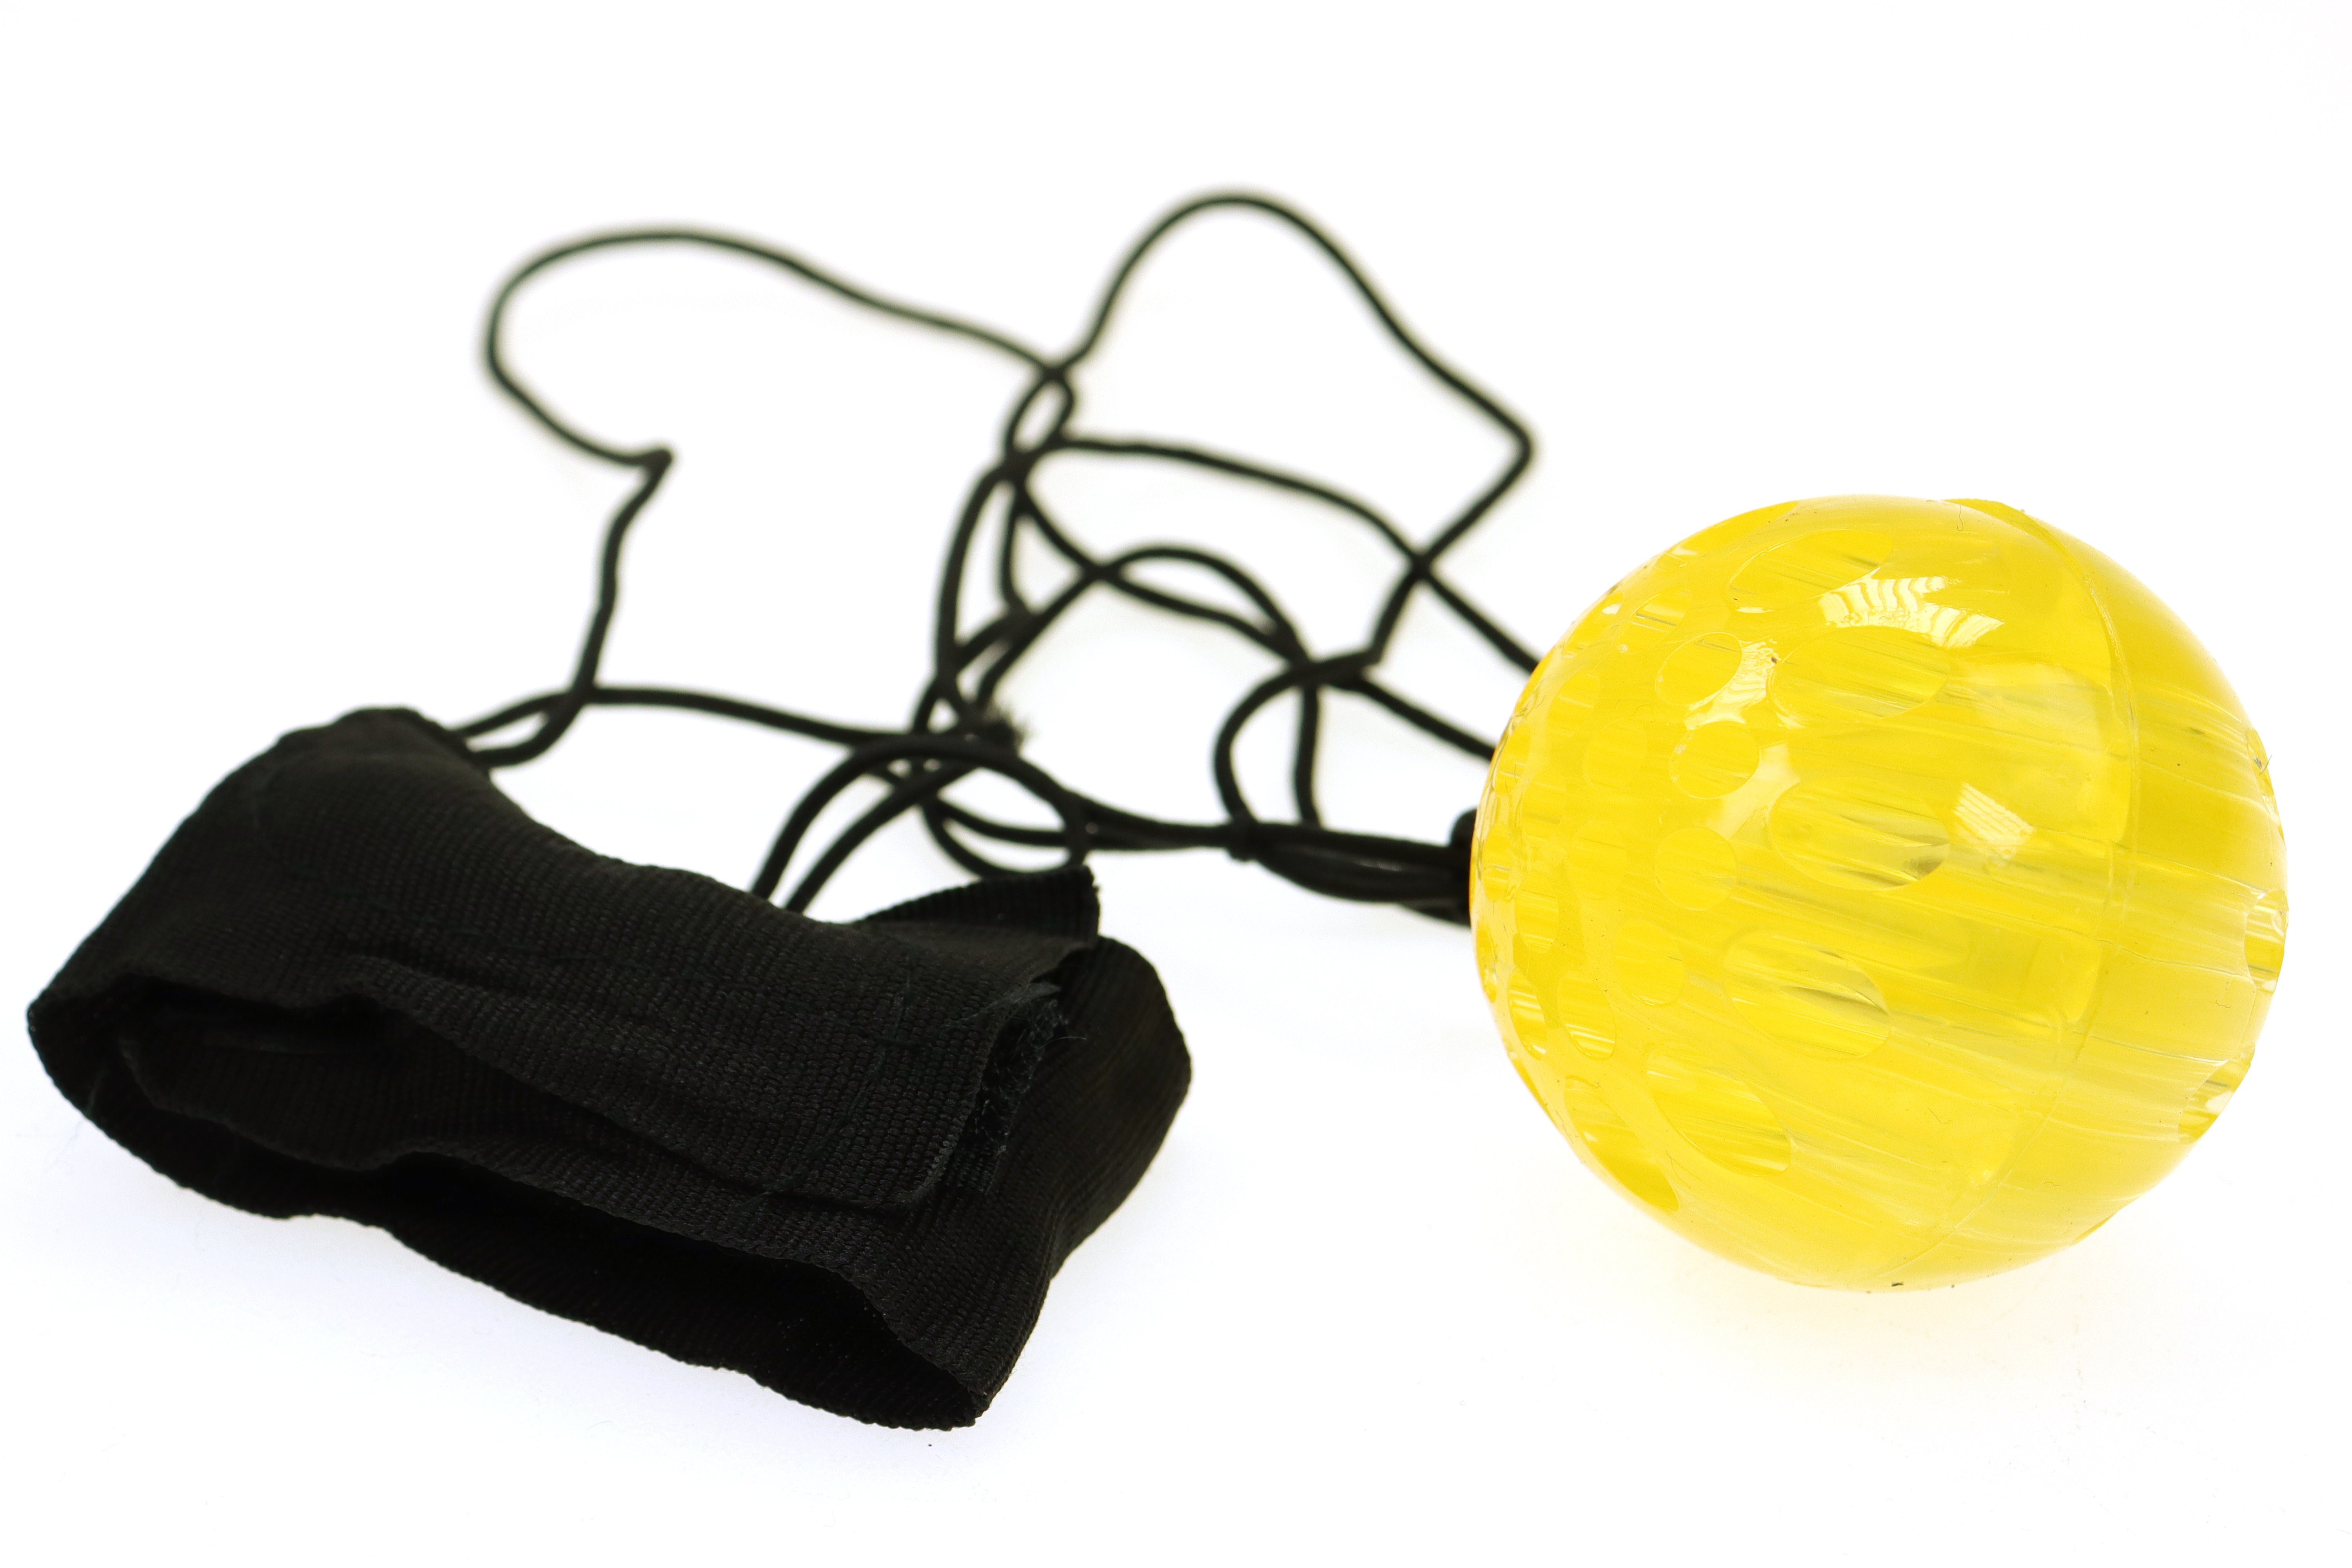 ELLUG Spielball 6er "Neon" Springball/Returnball/Flummi Armband&Schnur Ø5,5cm Set und leuchtet blinkt